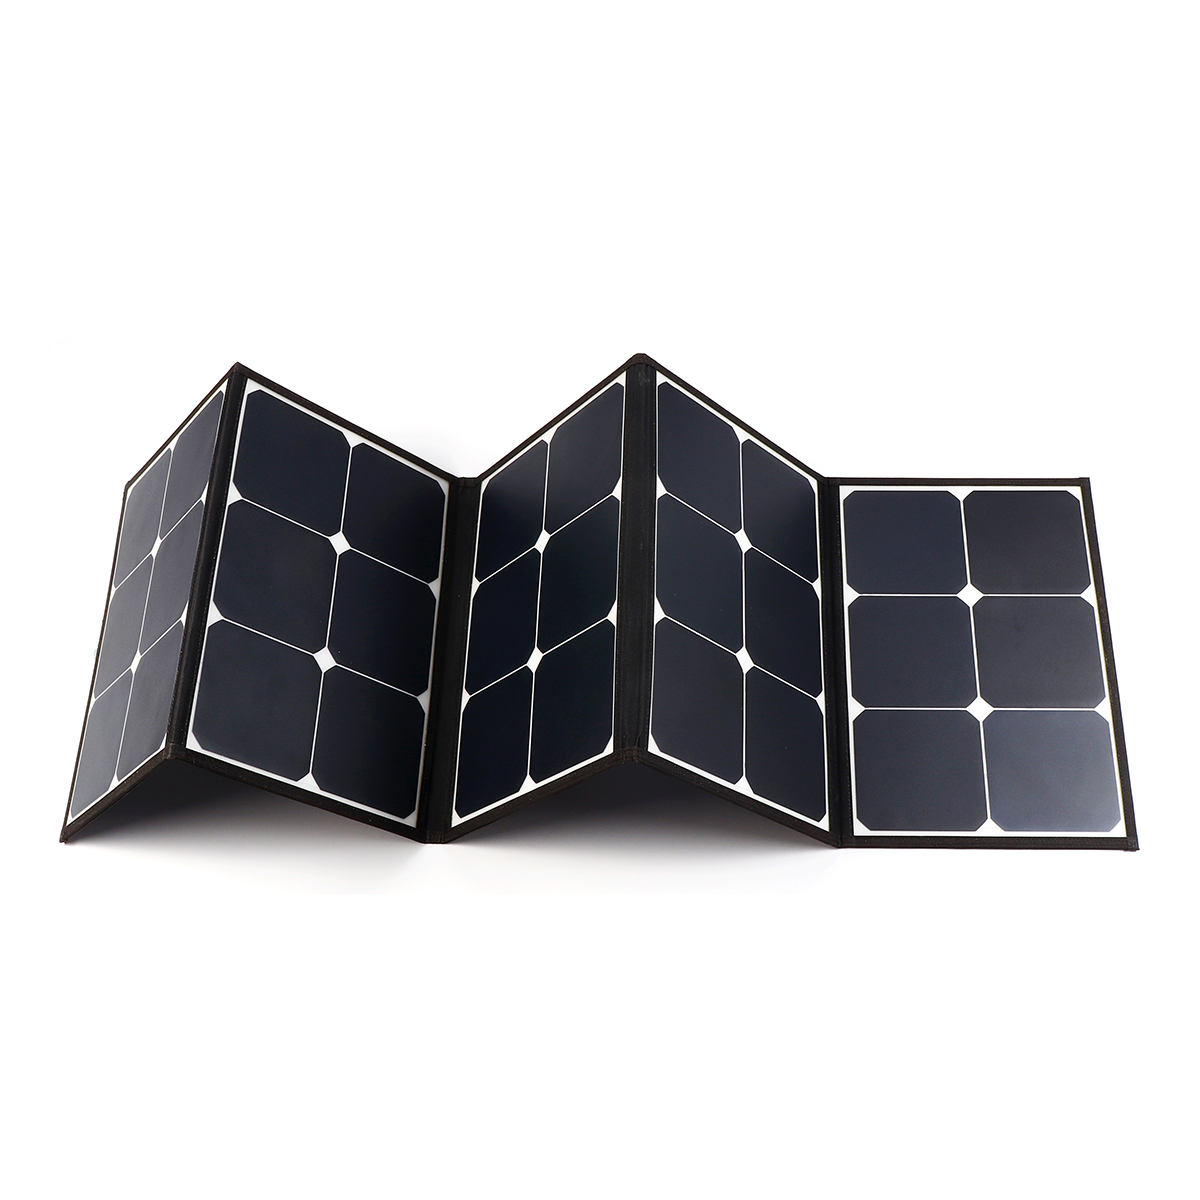 Sunpower-Solar-Folding-Bag-With-laptop-Connector-10PCS-DC-Charging-Line-1PCS-Car-charger-1PCS-Batter-1525145